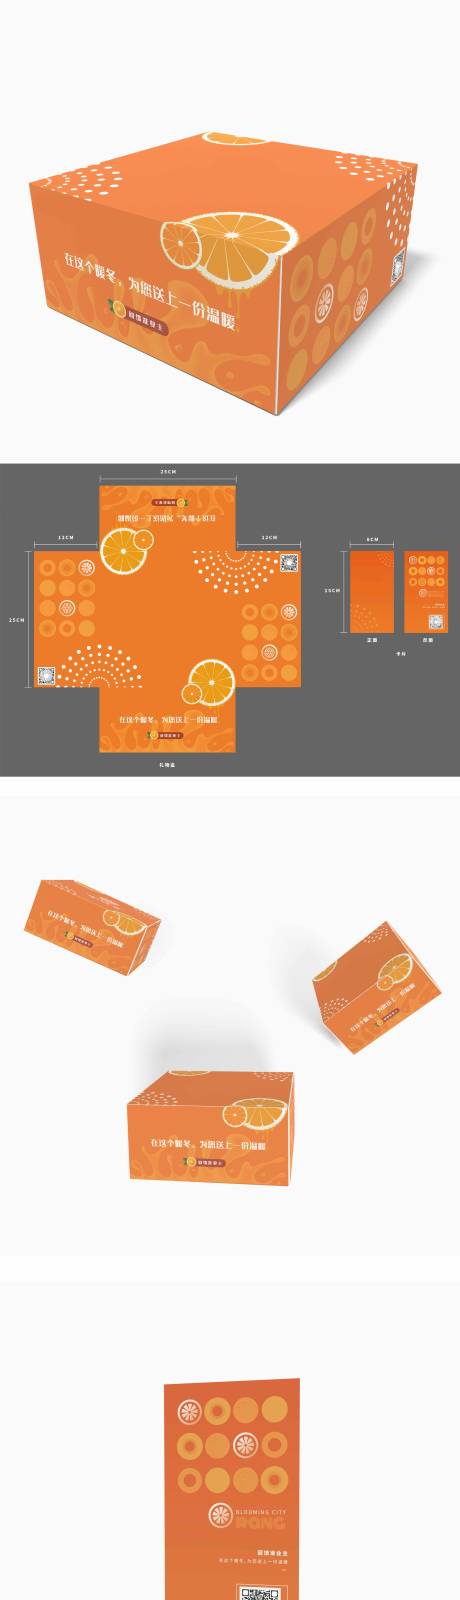 地产橙子盒子包装设计